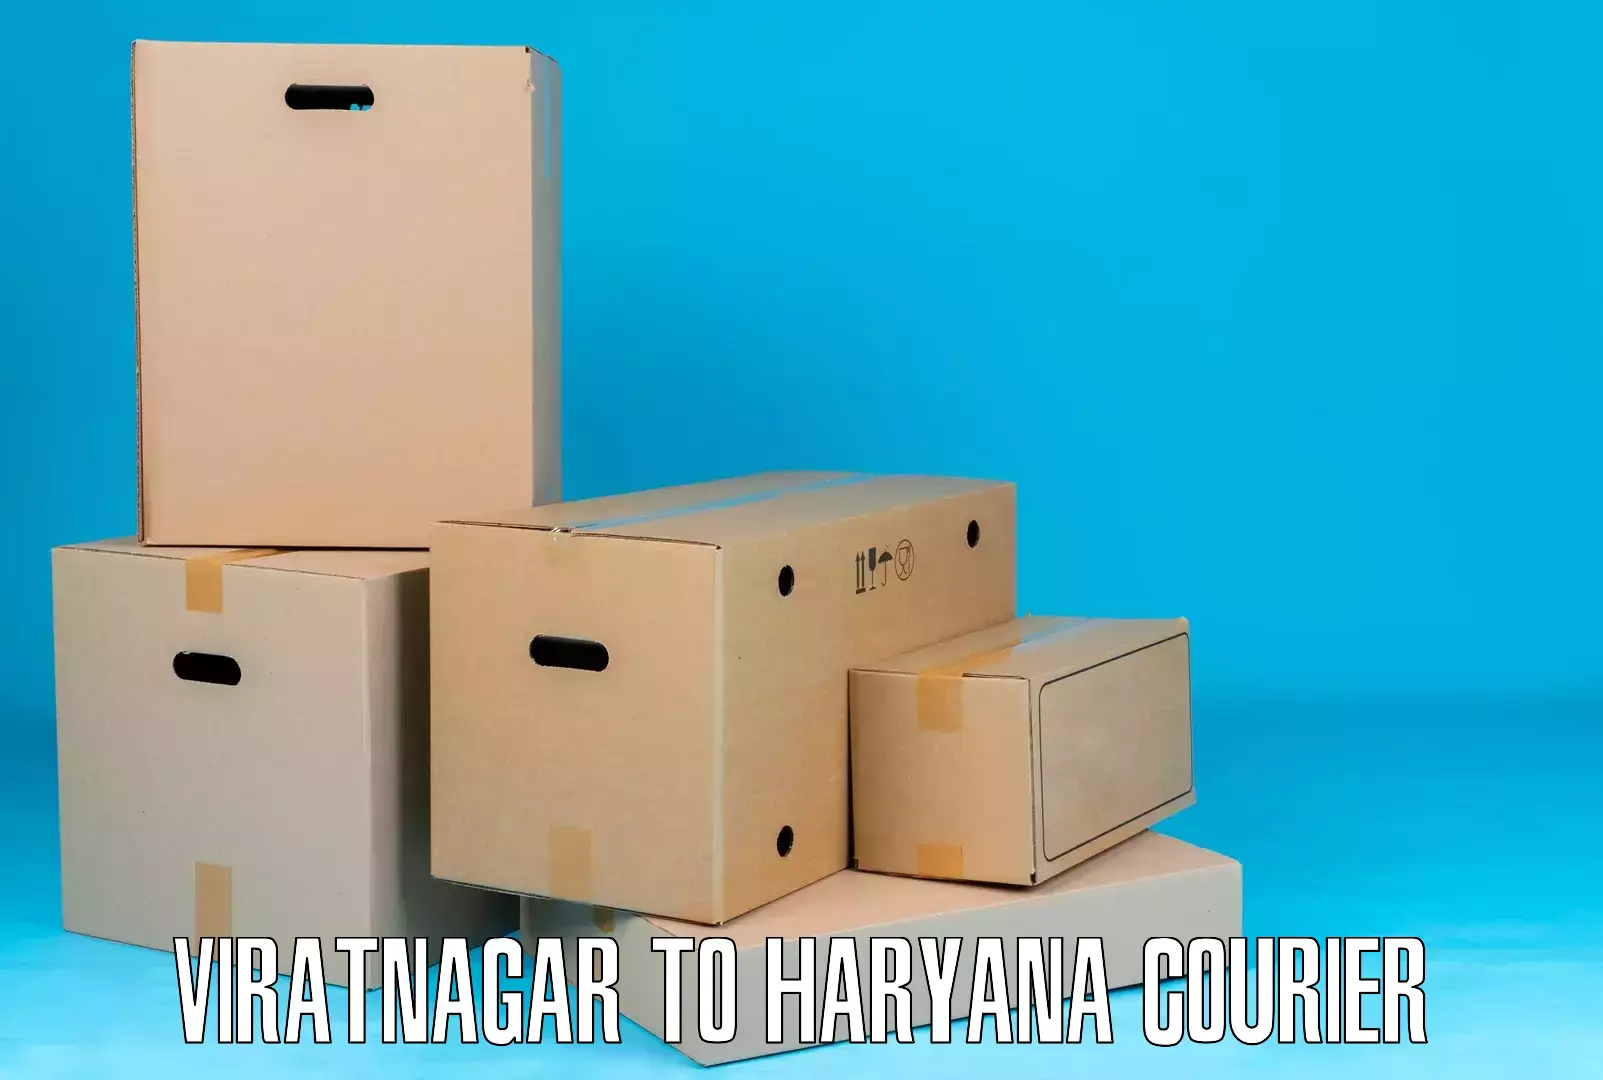 Business shipping needs Viratnagar to Dharuhera